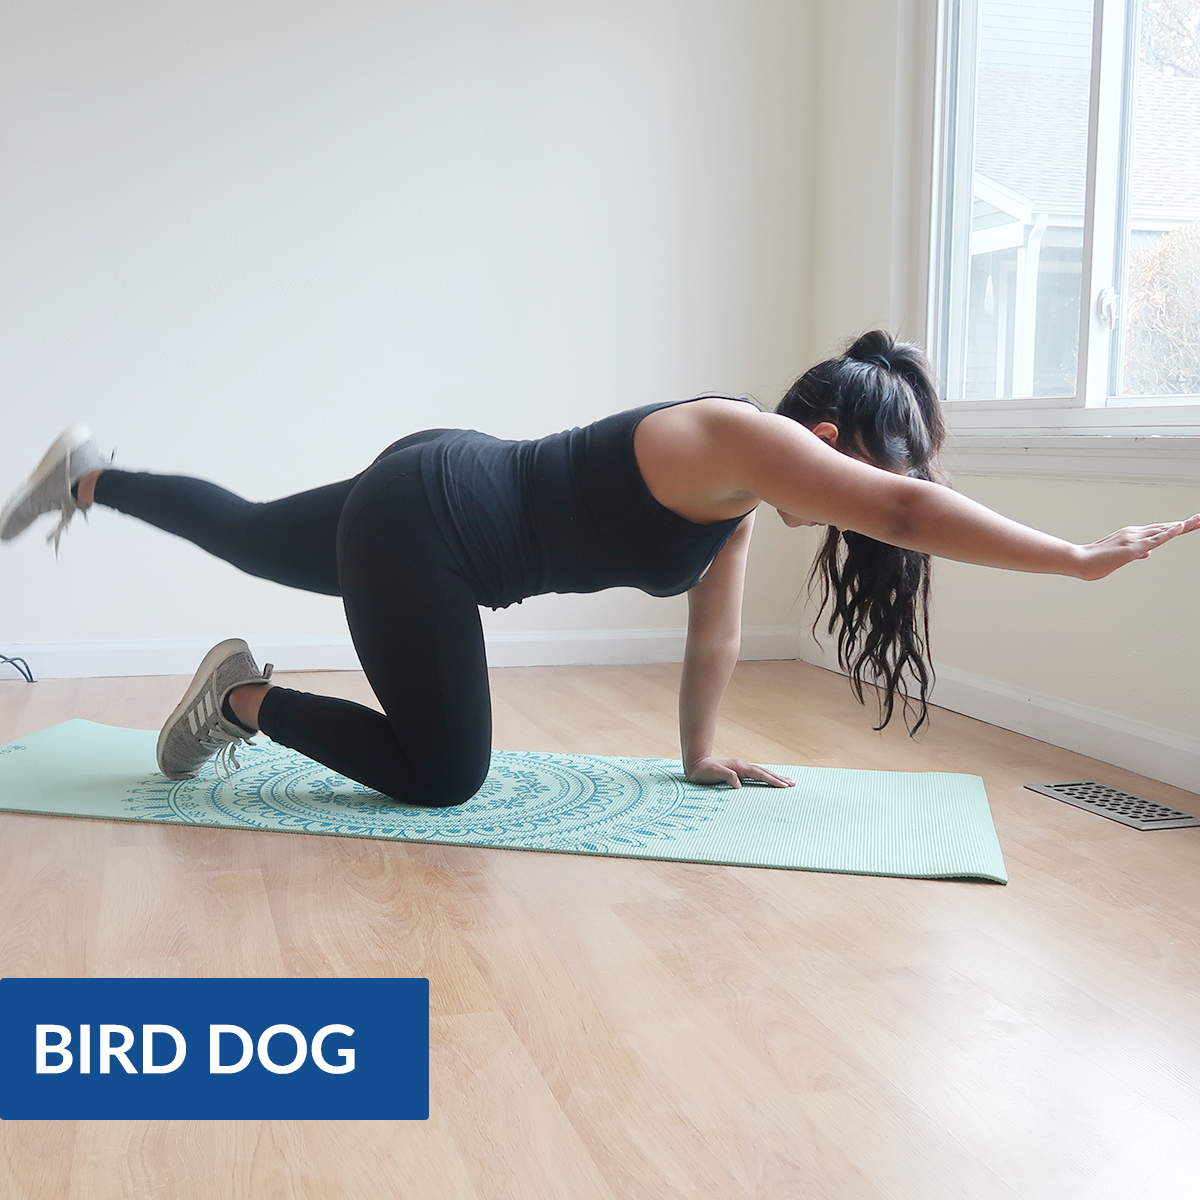 bird dog exercise